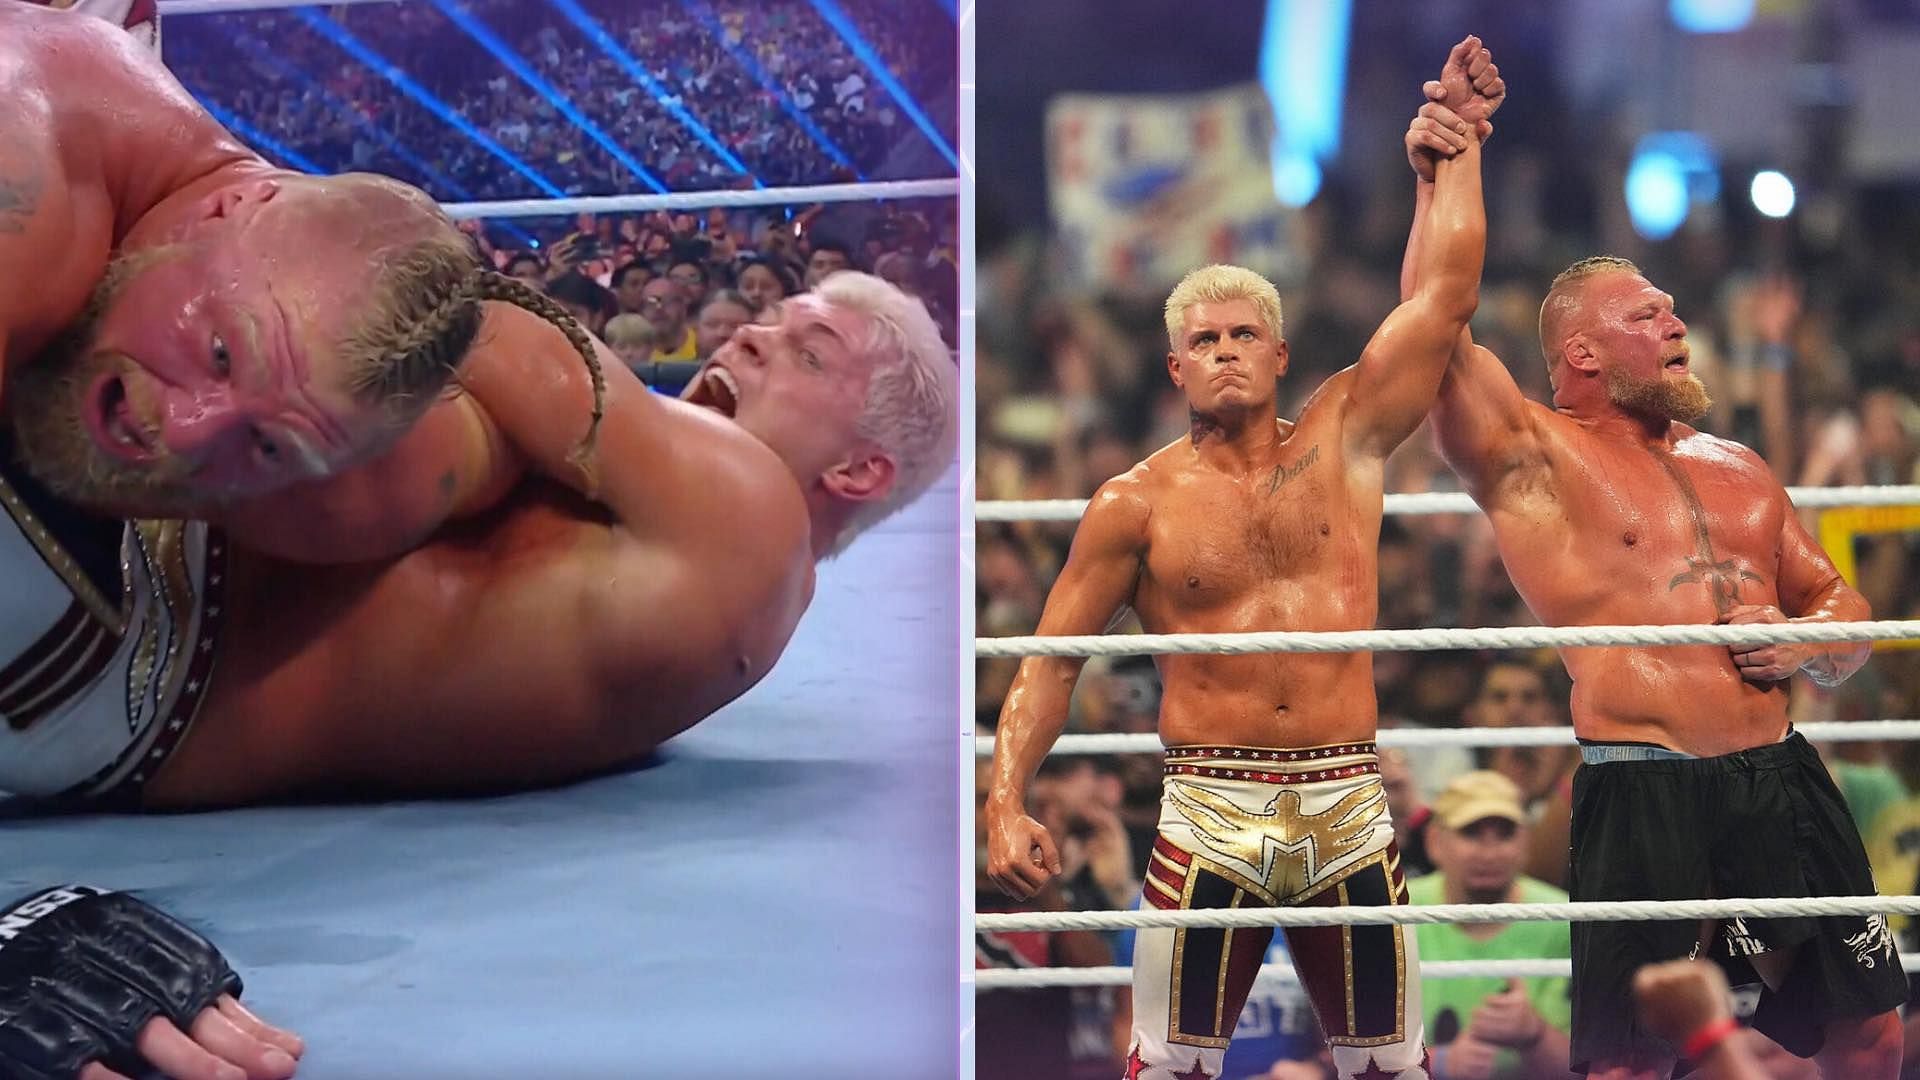 Cody Rhodes and Brock Lesnar at SummerSlam